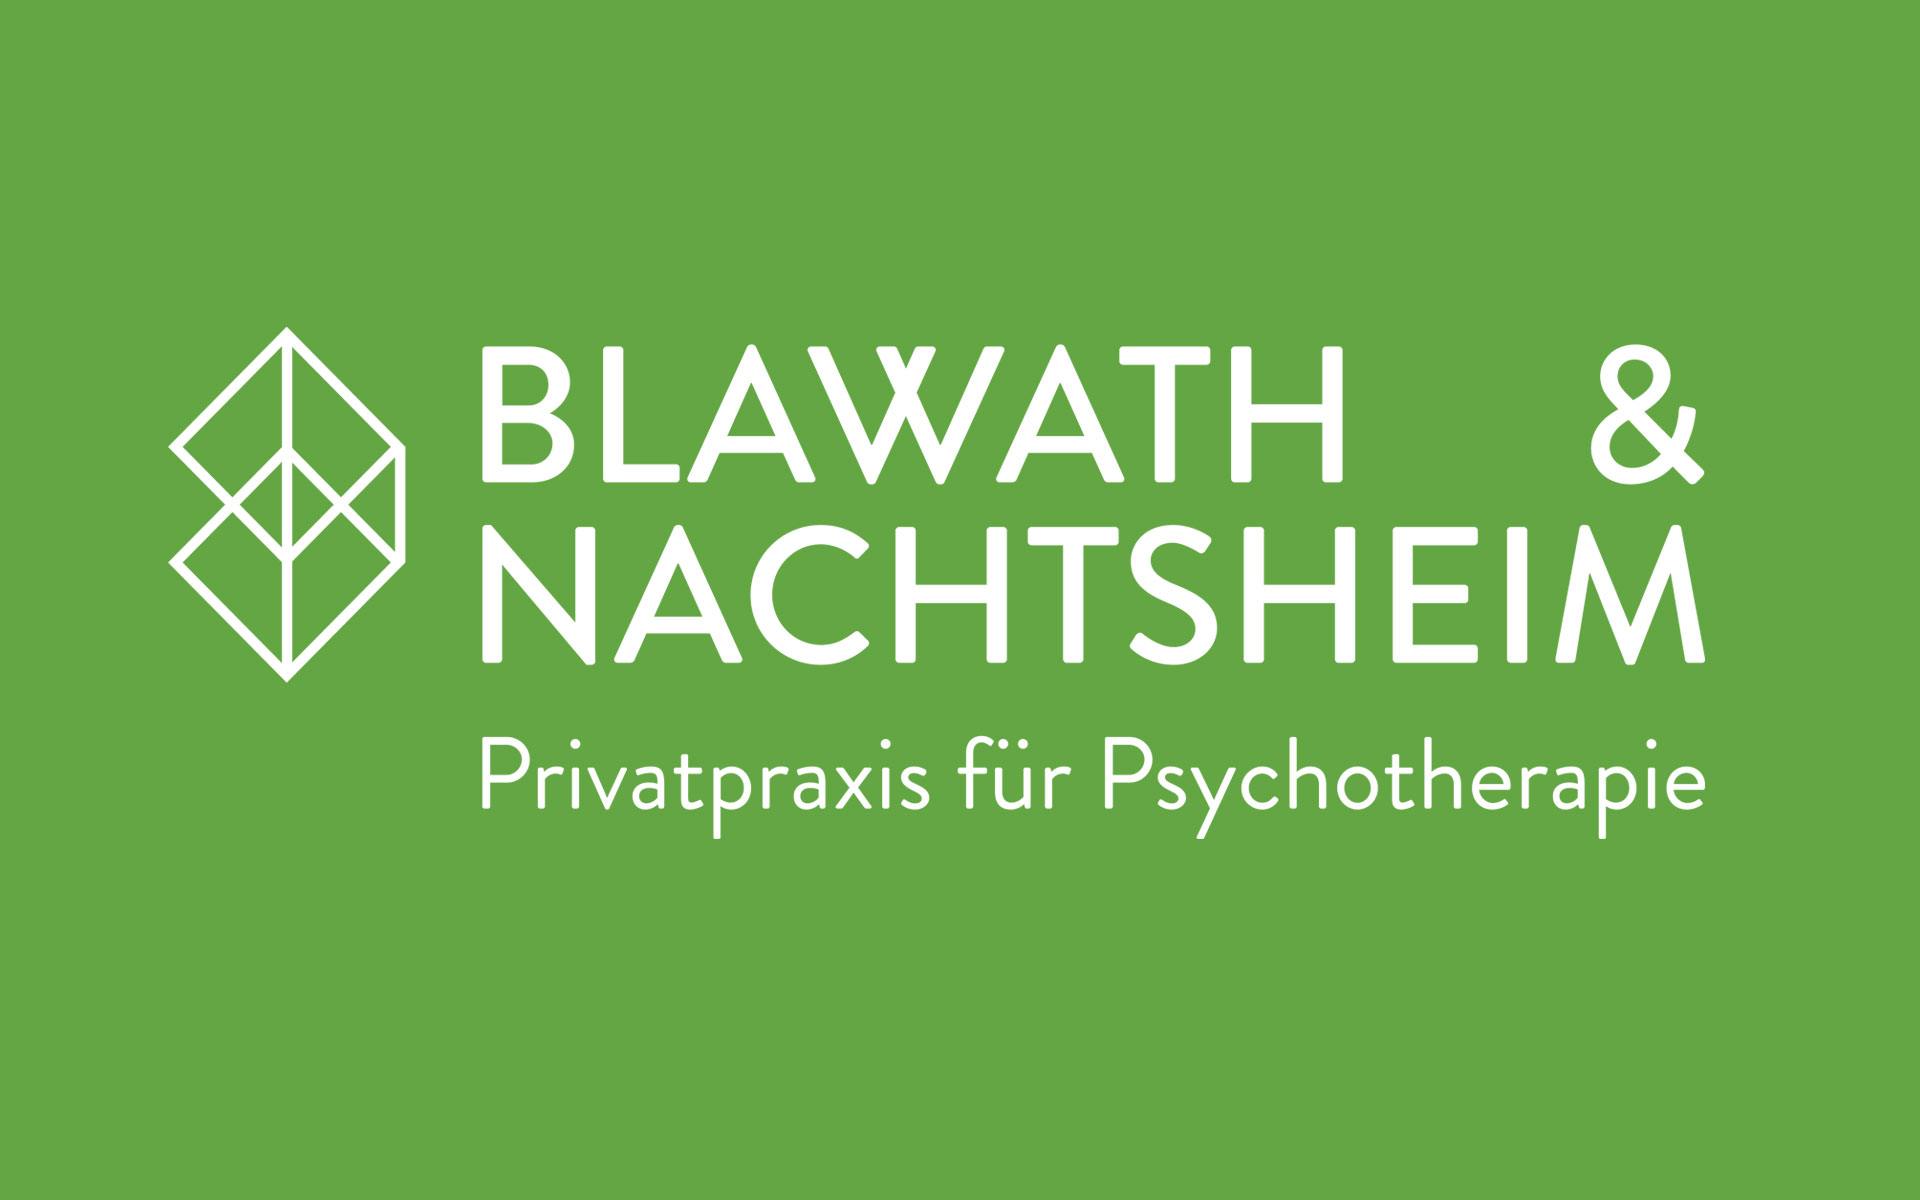 Blawath & Nachtsheim Corporate Design, Logotype weiß auf grünem Grund